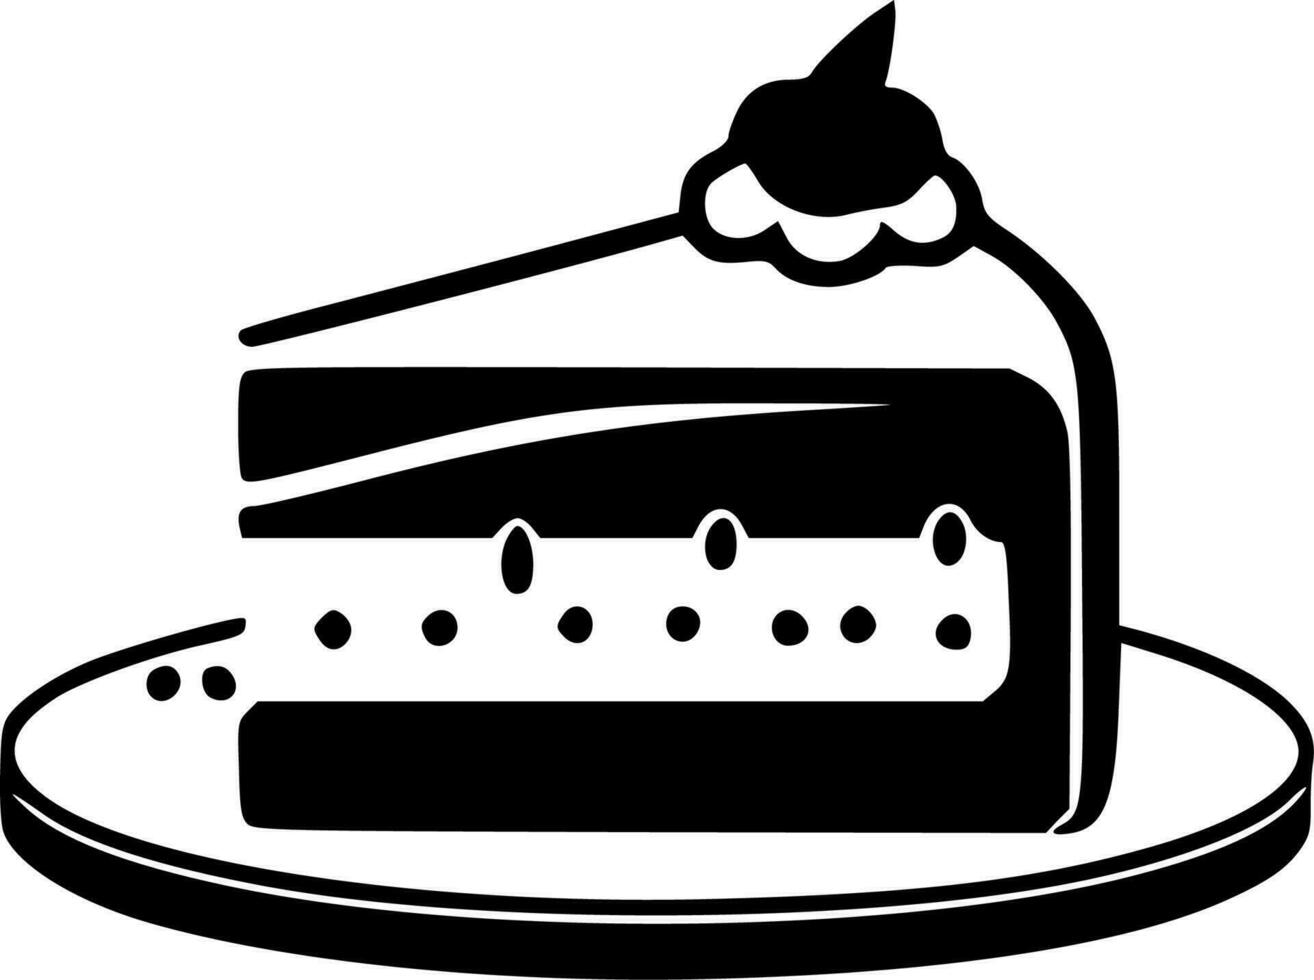 kaka - minimalistisk och platt logotyp - vektor illustration